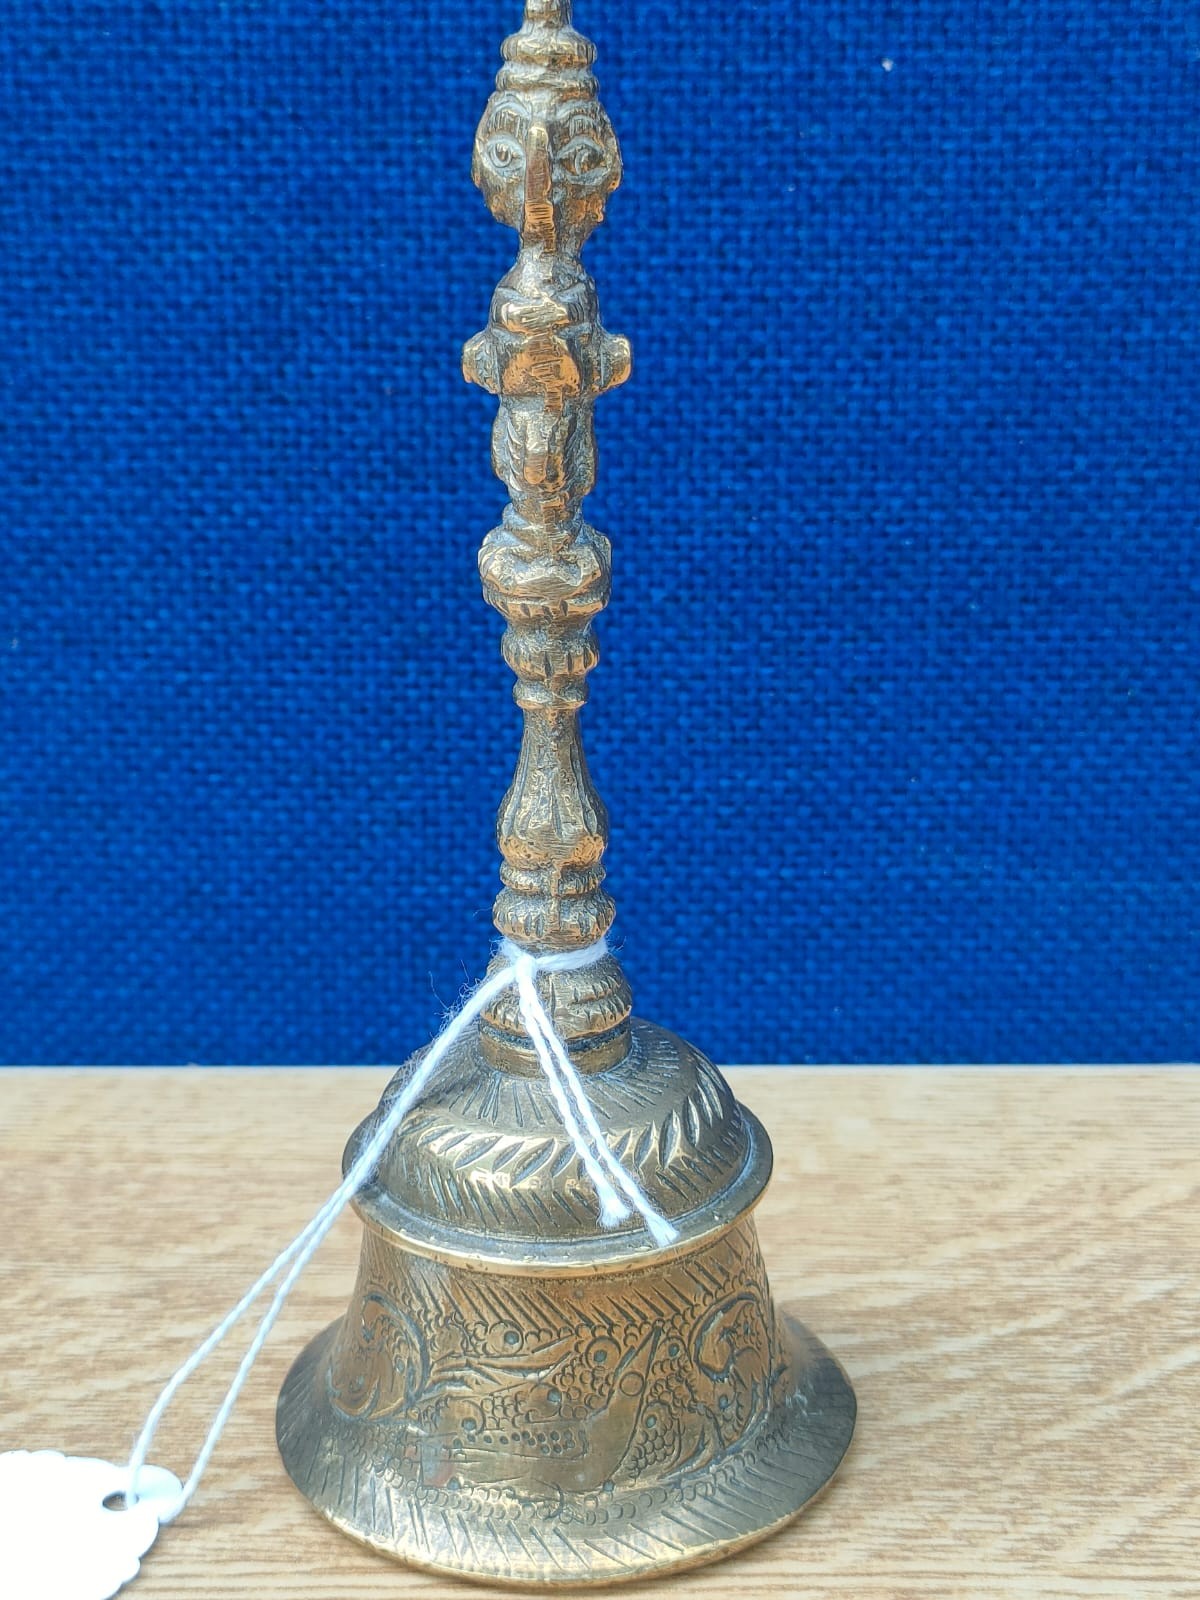 Tibetan ornate brass bell. [13cm high]